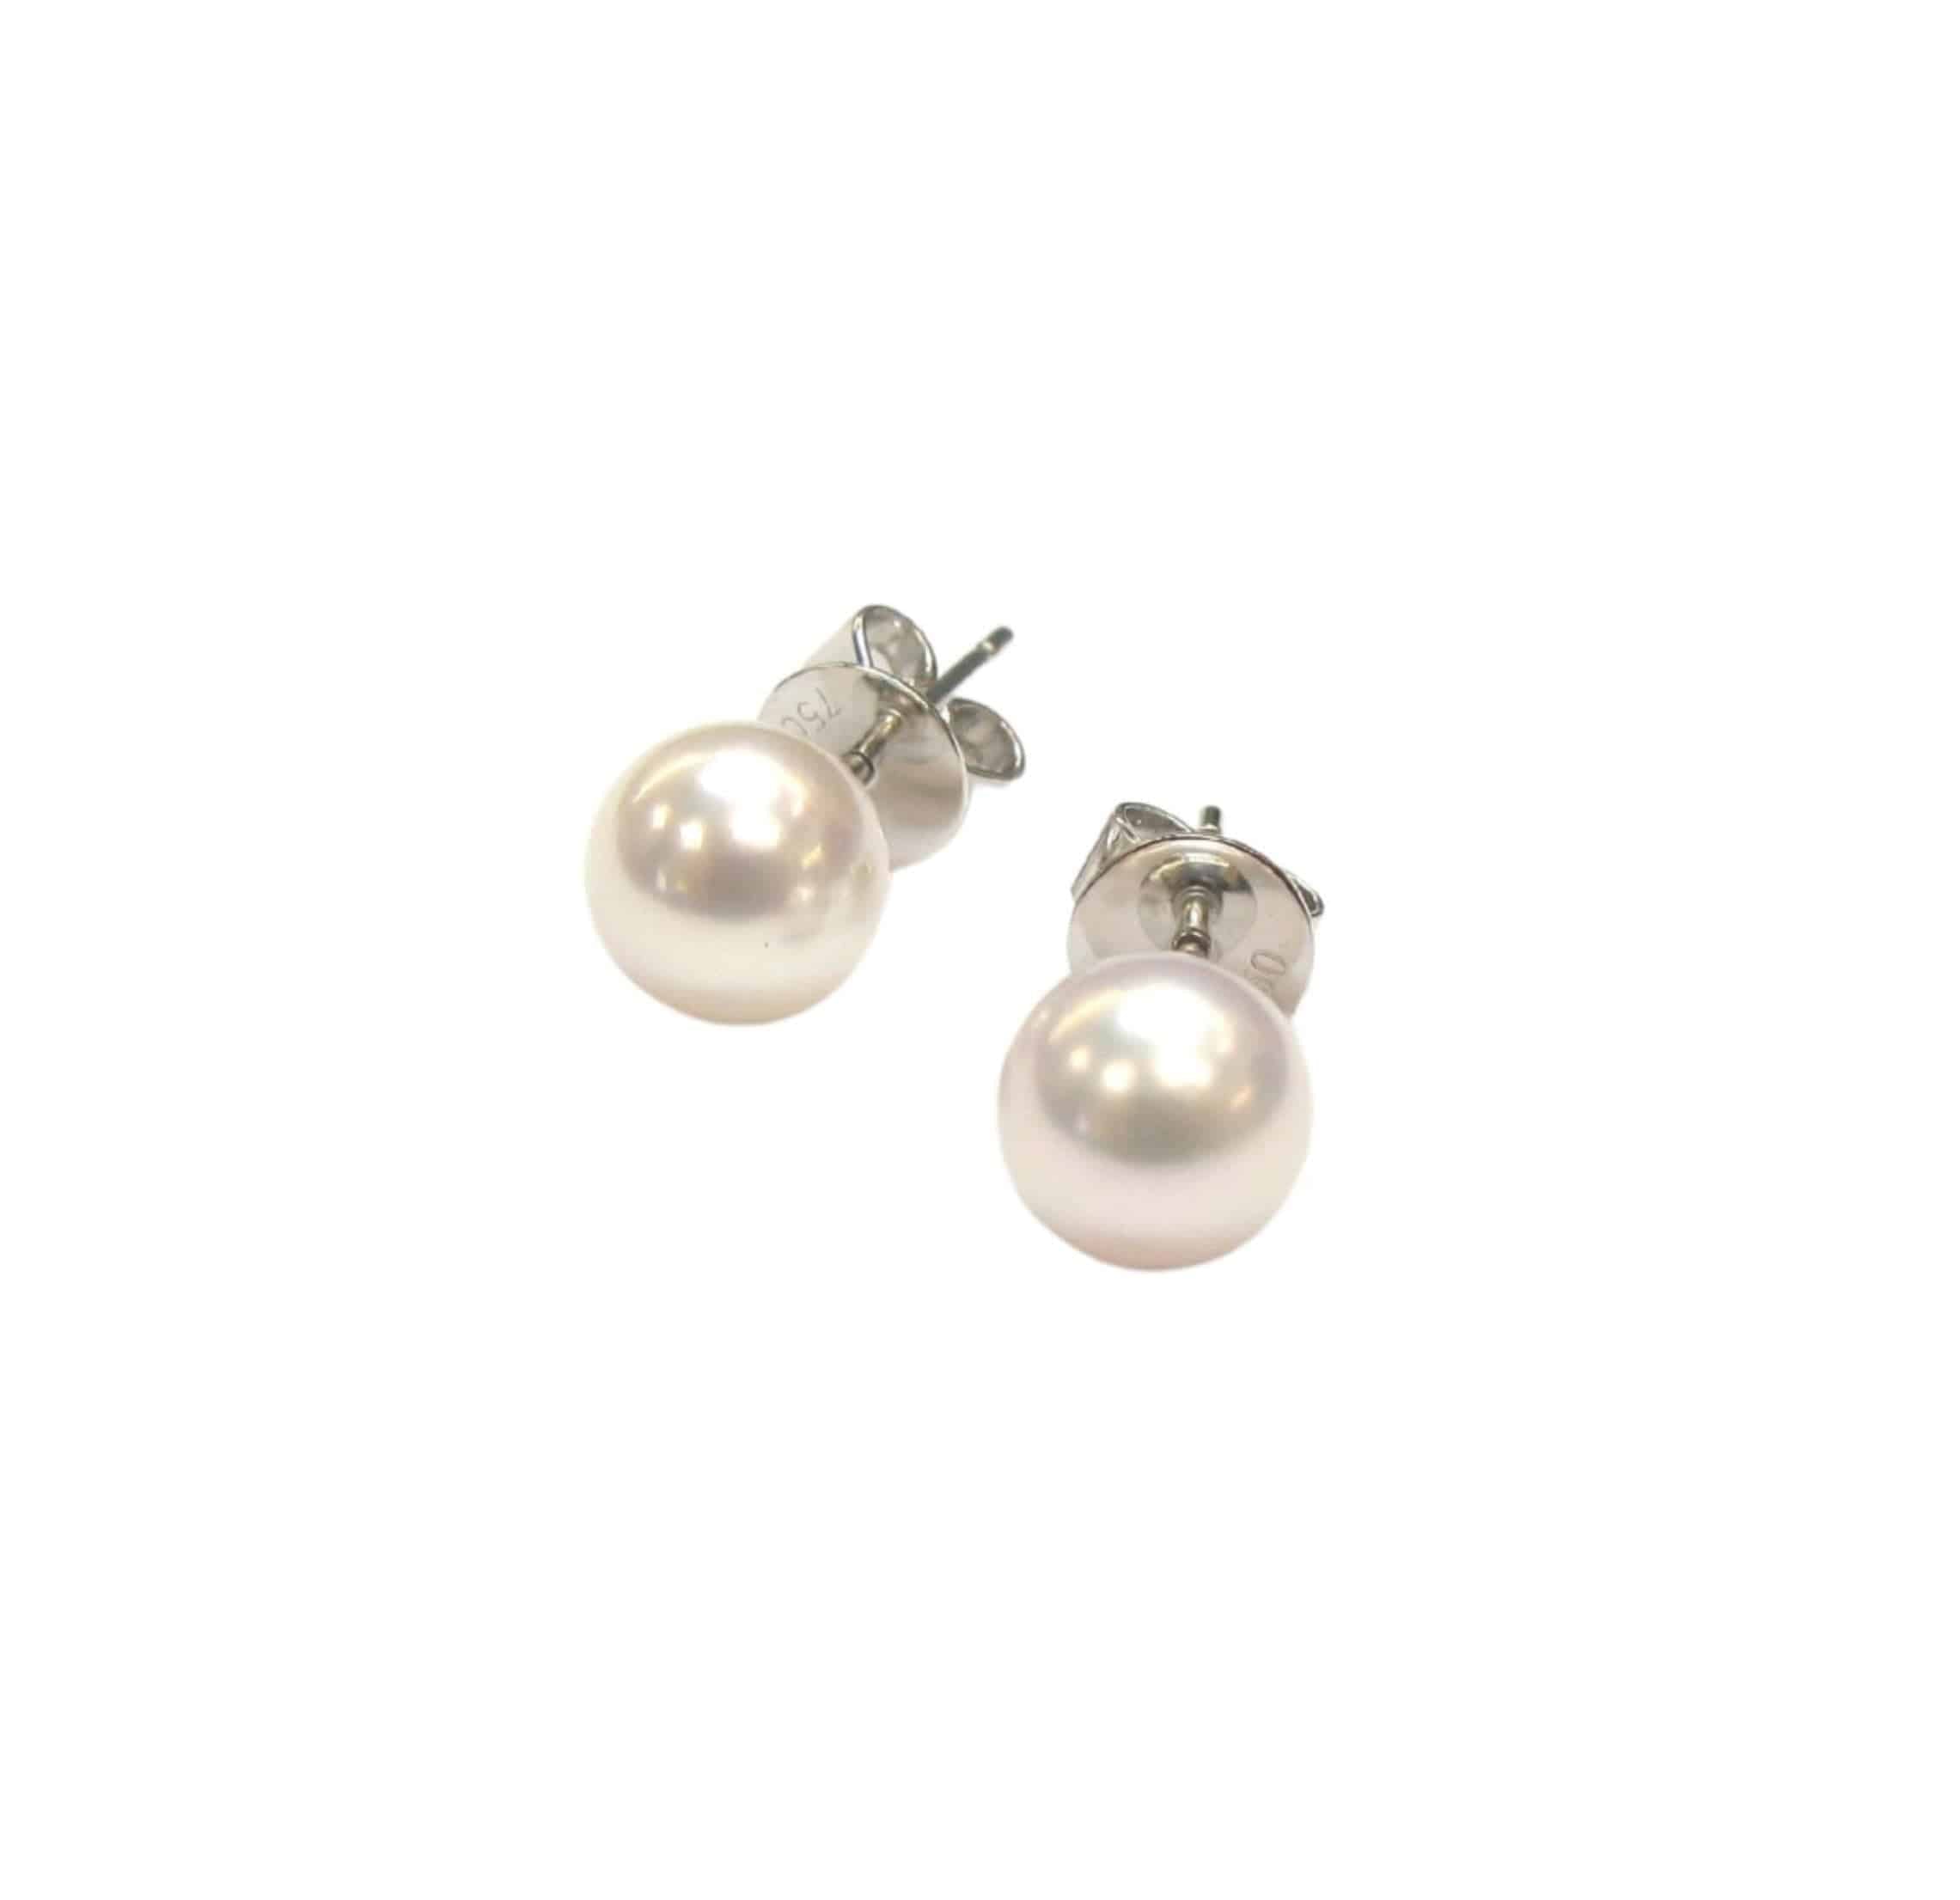 Japanese Cultured Pearl Earrings